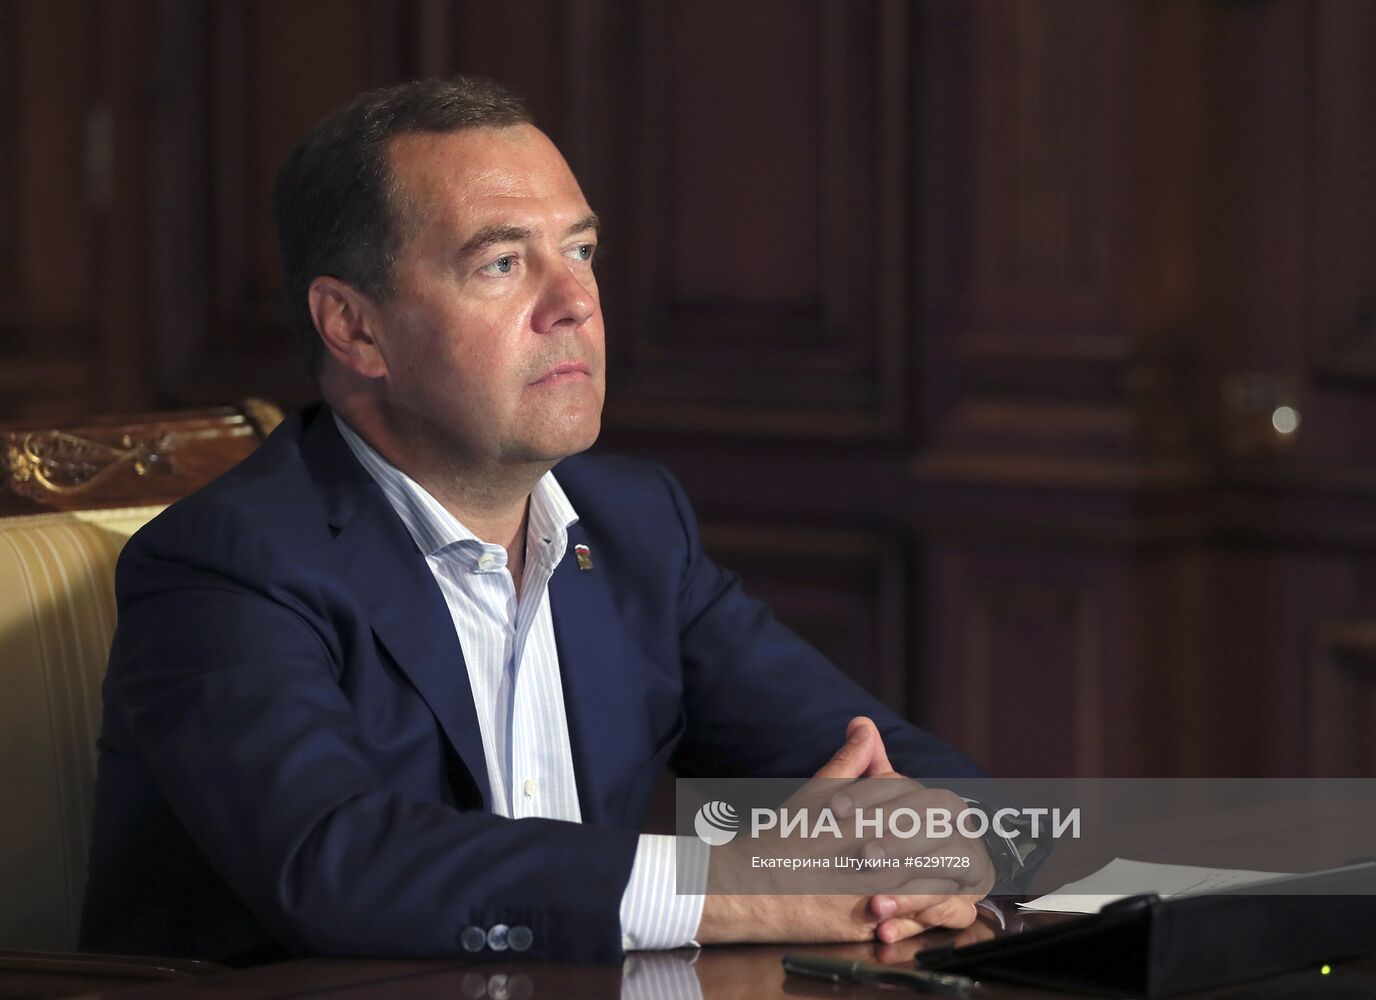 Председатель "Единой России" Д. Медведев провел встречу с участниками кадрового проекта "ПолитСтартап"